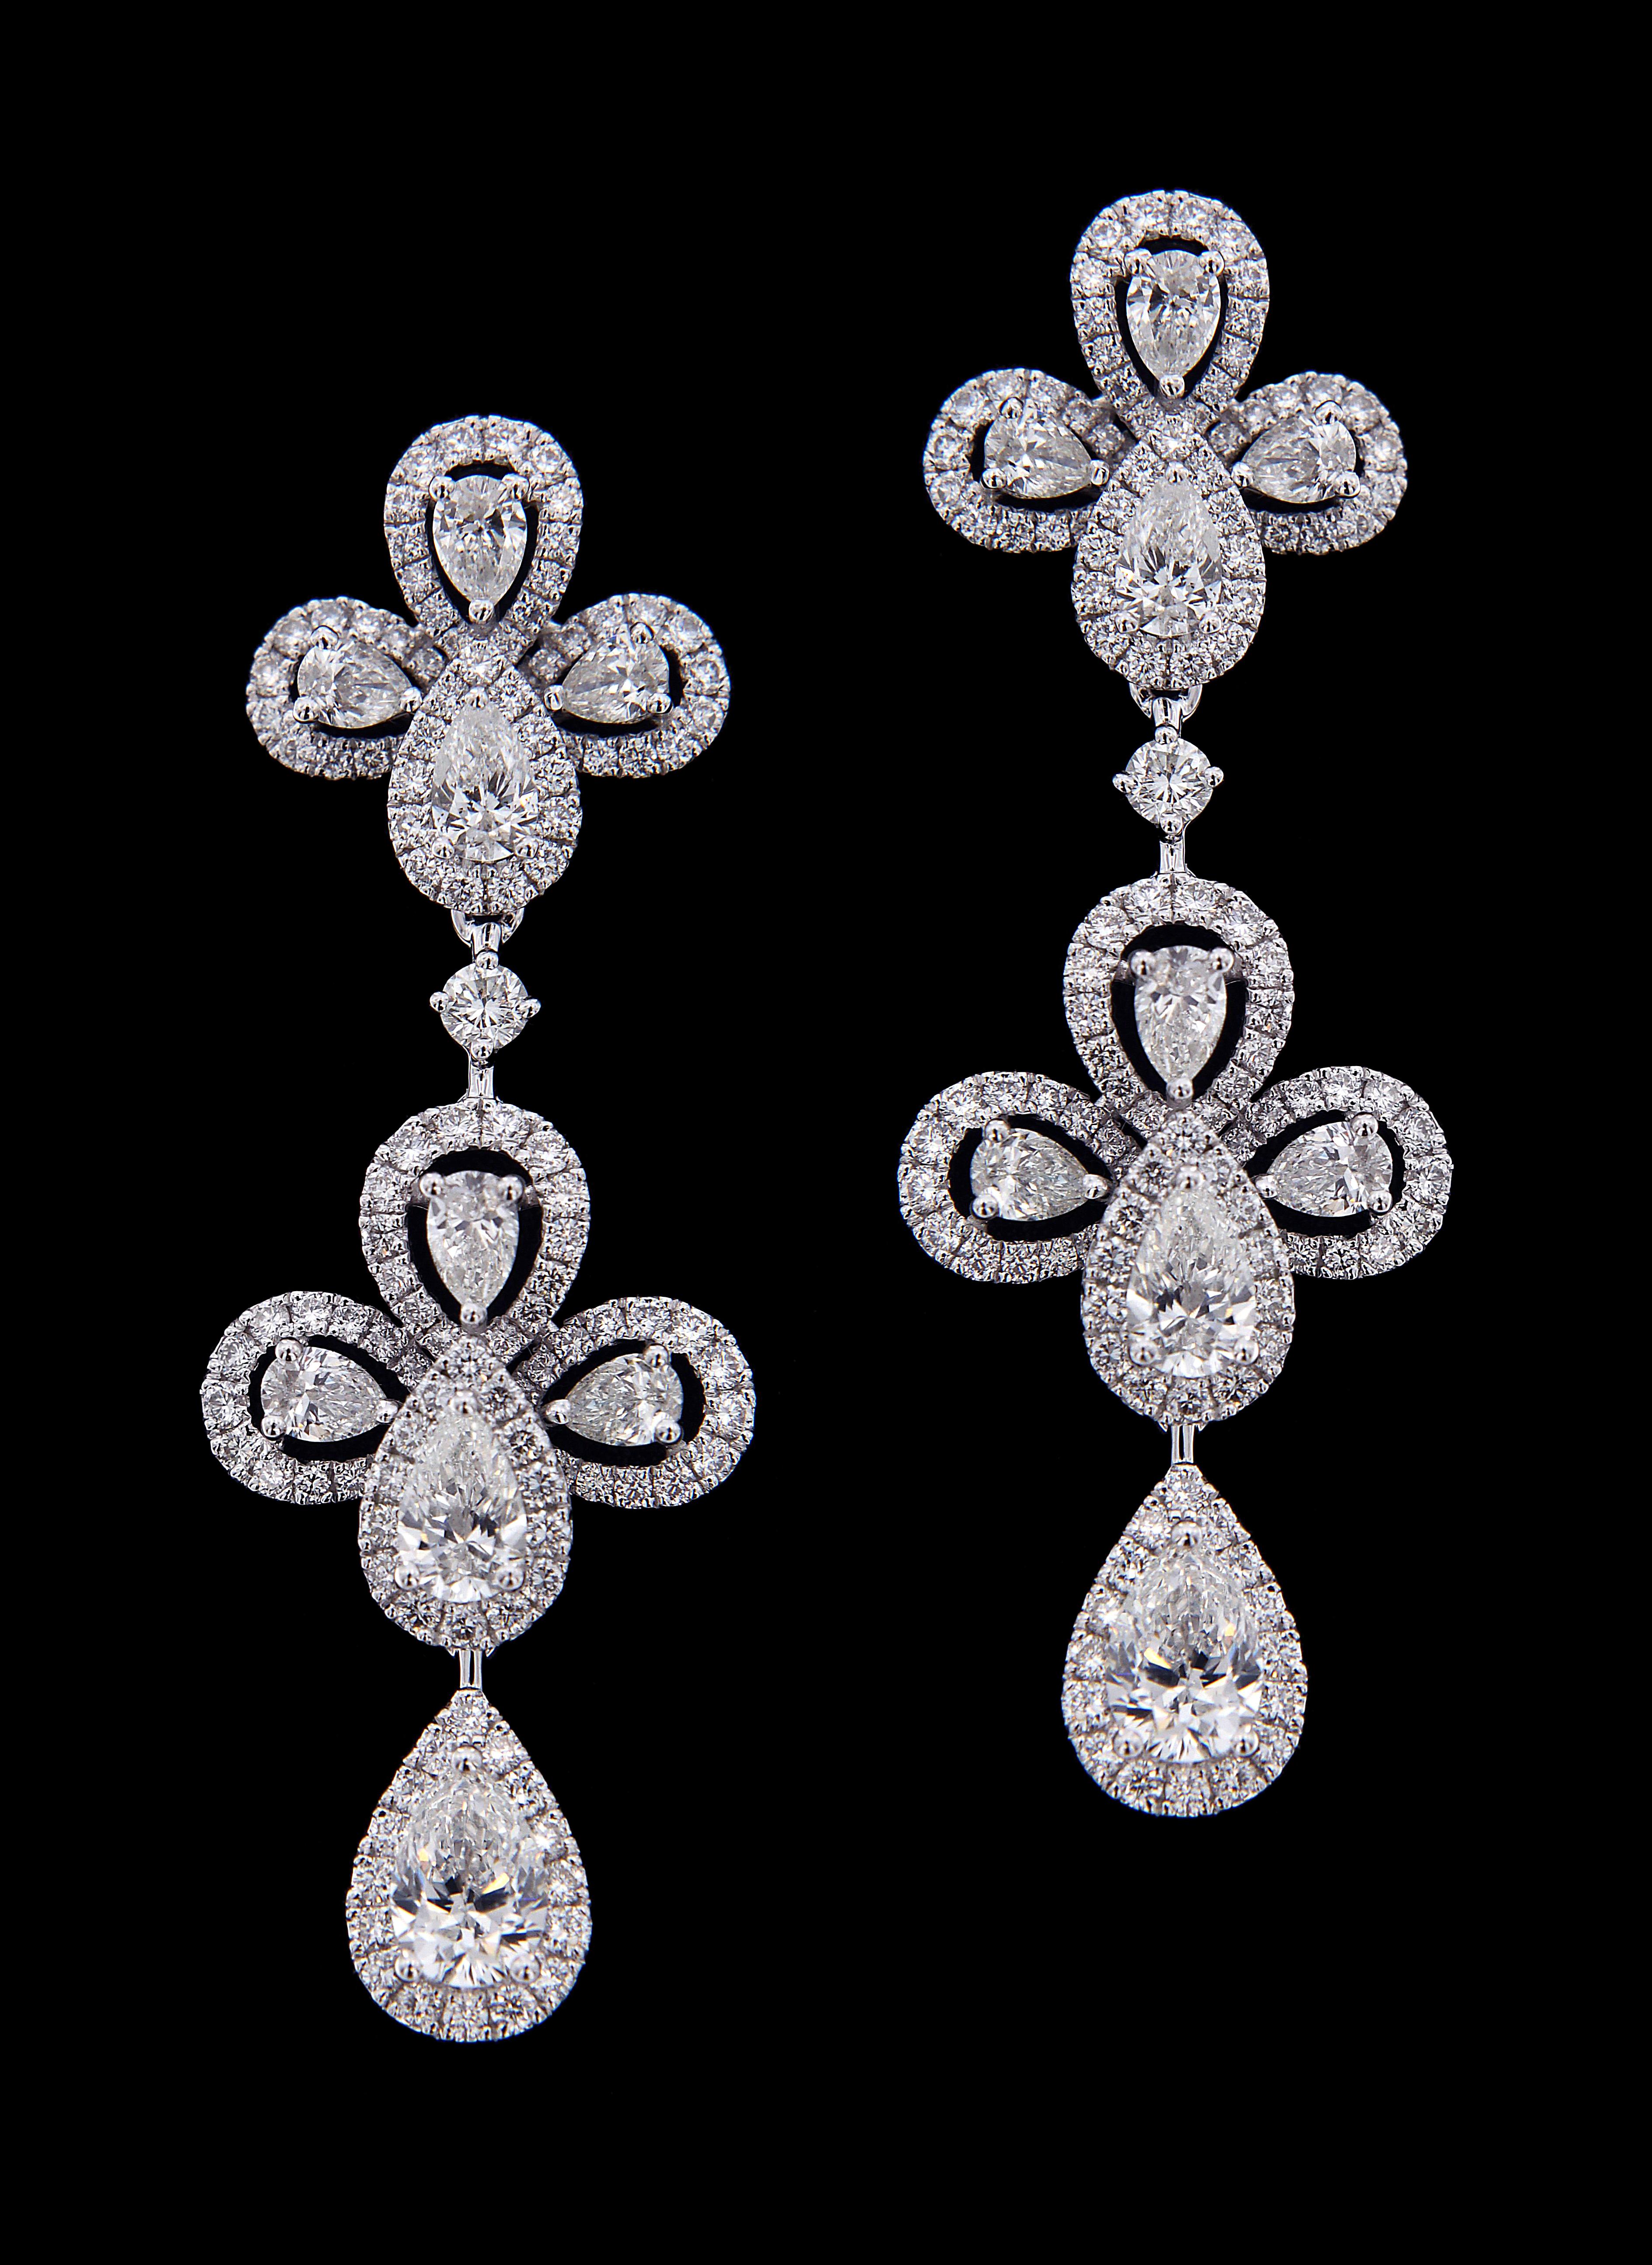 Pear Cut Ritzy 18 Karat White Gold and Diamond Chandelier Earrings For Sale